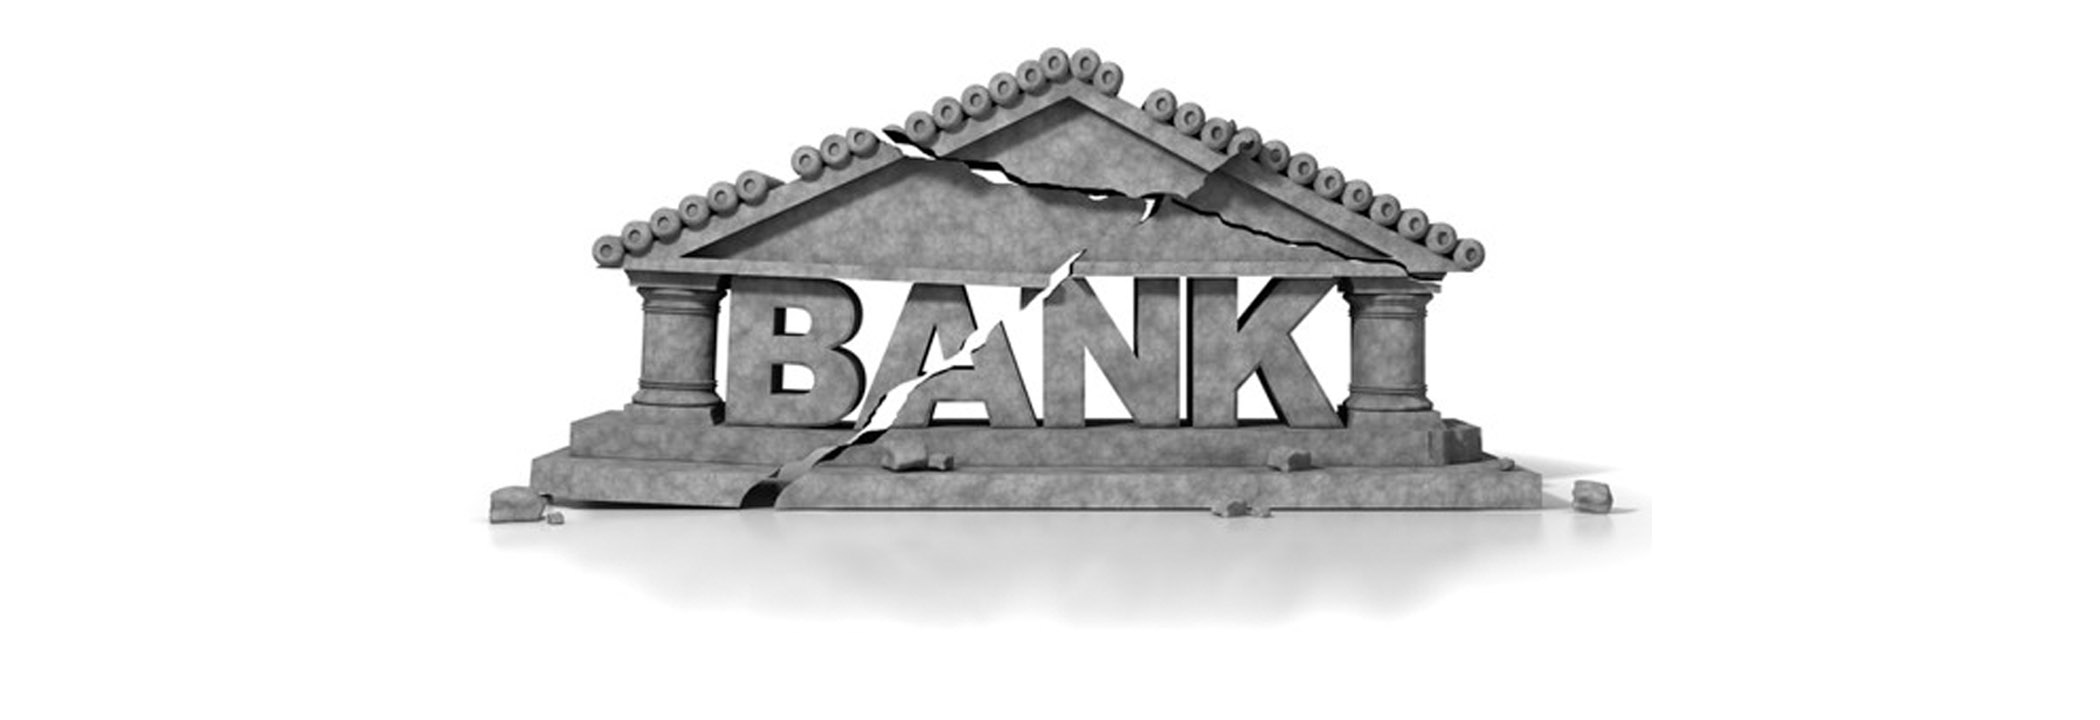 بانک سیستم بانکداری بیت کوین